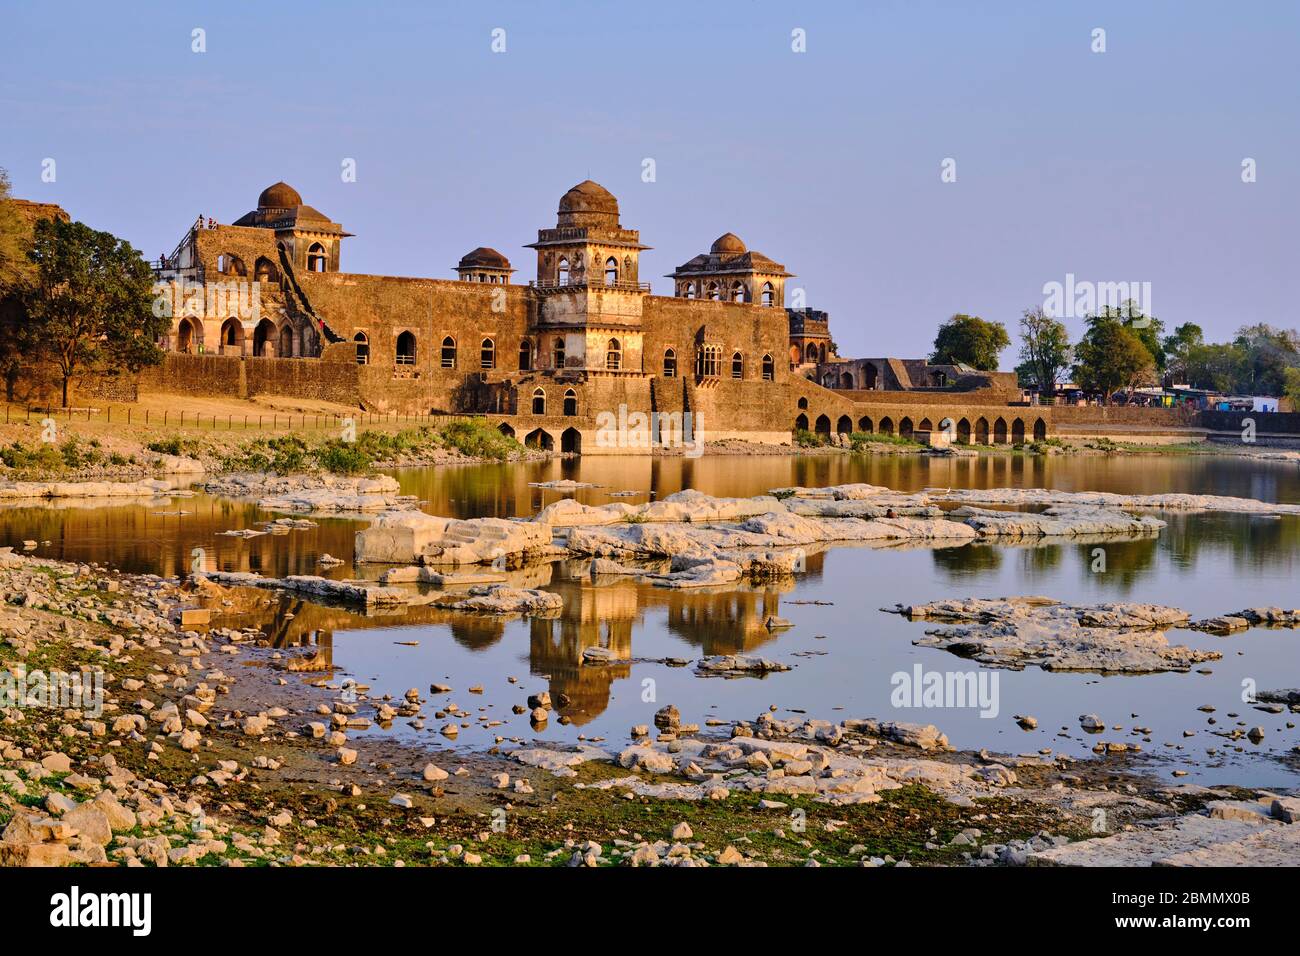 Indien, Madhya Pradesh Zustand, Mandu, 15. Jahrhundert afghanischer Stil Jahaz Mahal Palast, der von Ghyas-ud-DIN errichtet wurde Stockfoto